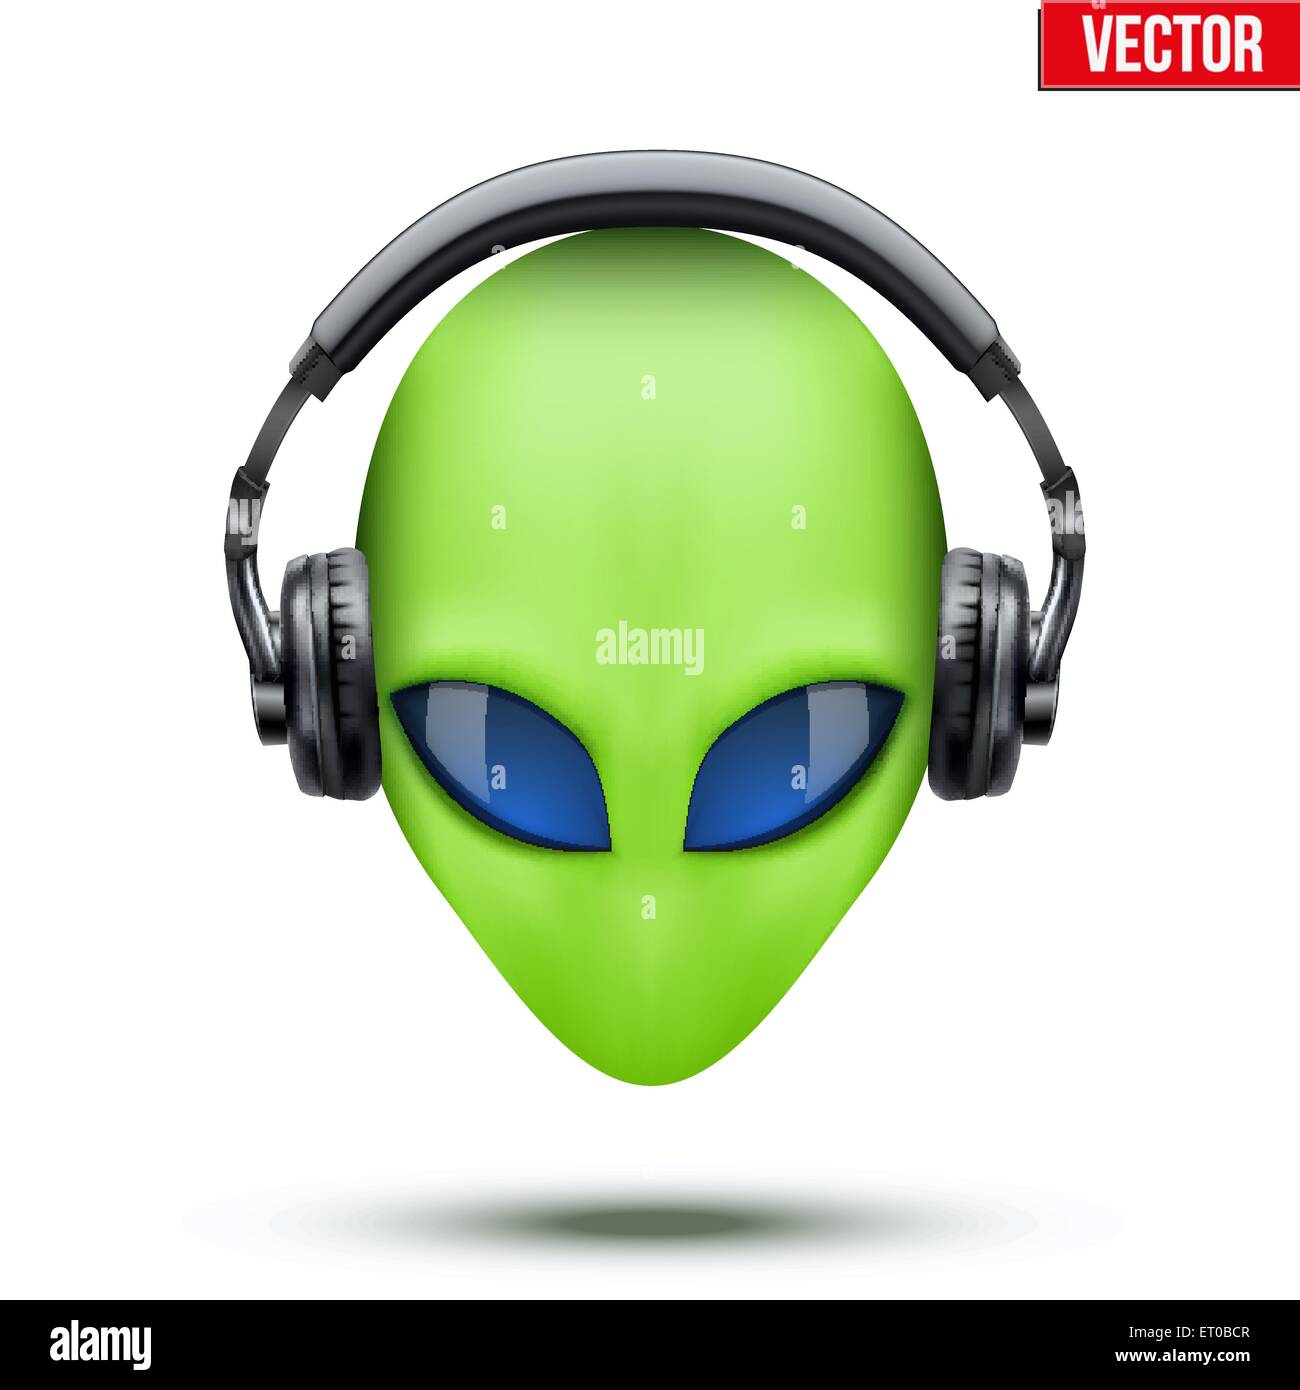 Alien head with headphones. Vector. Stock Vector